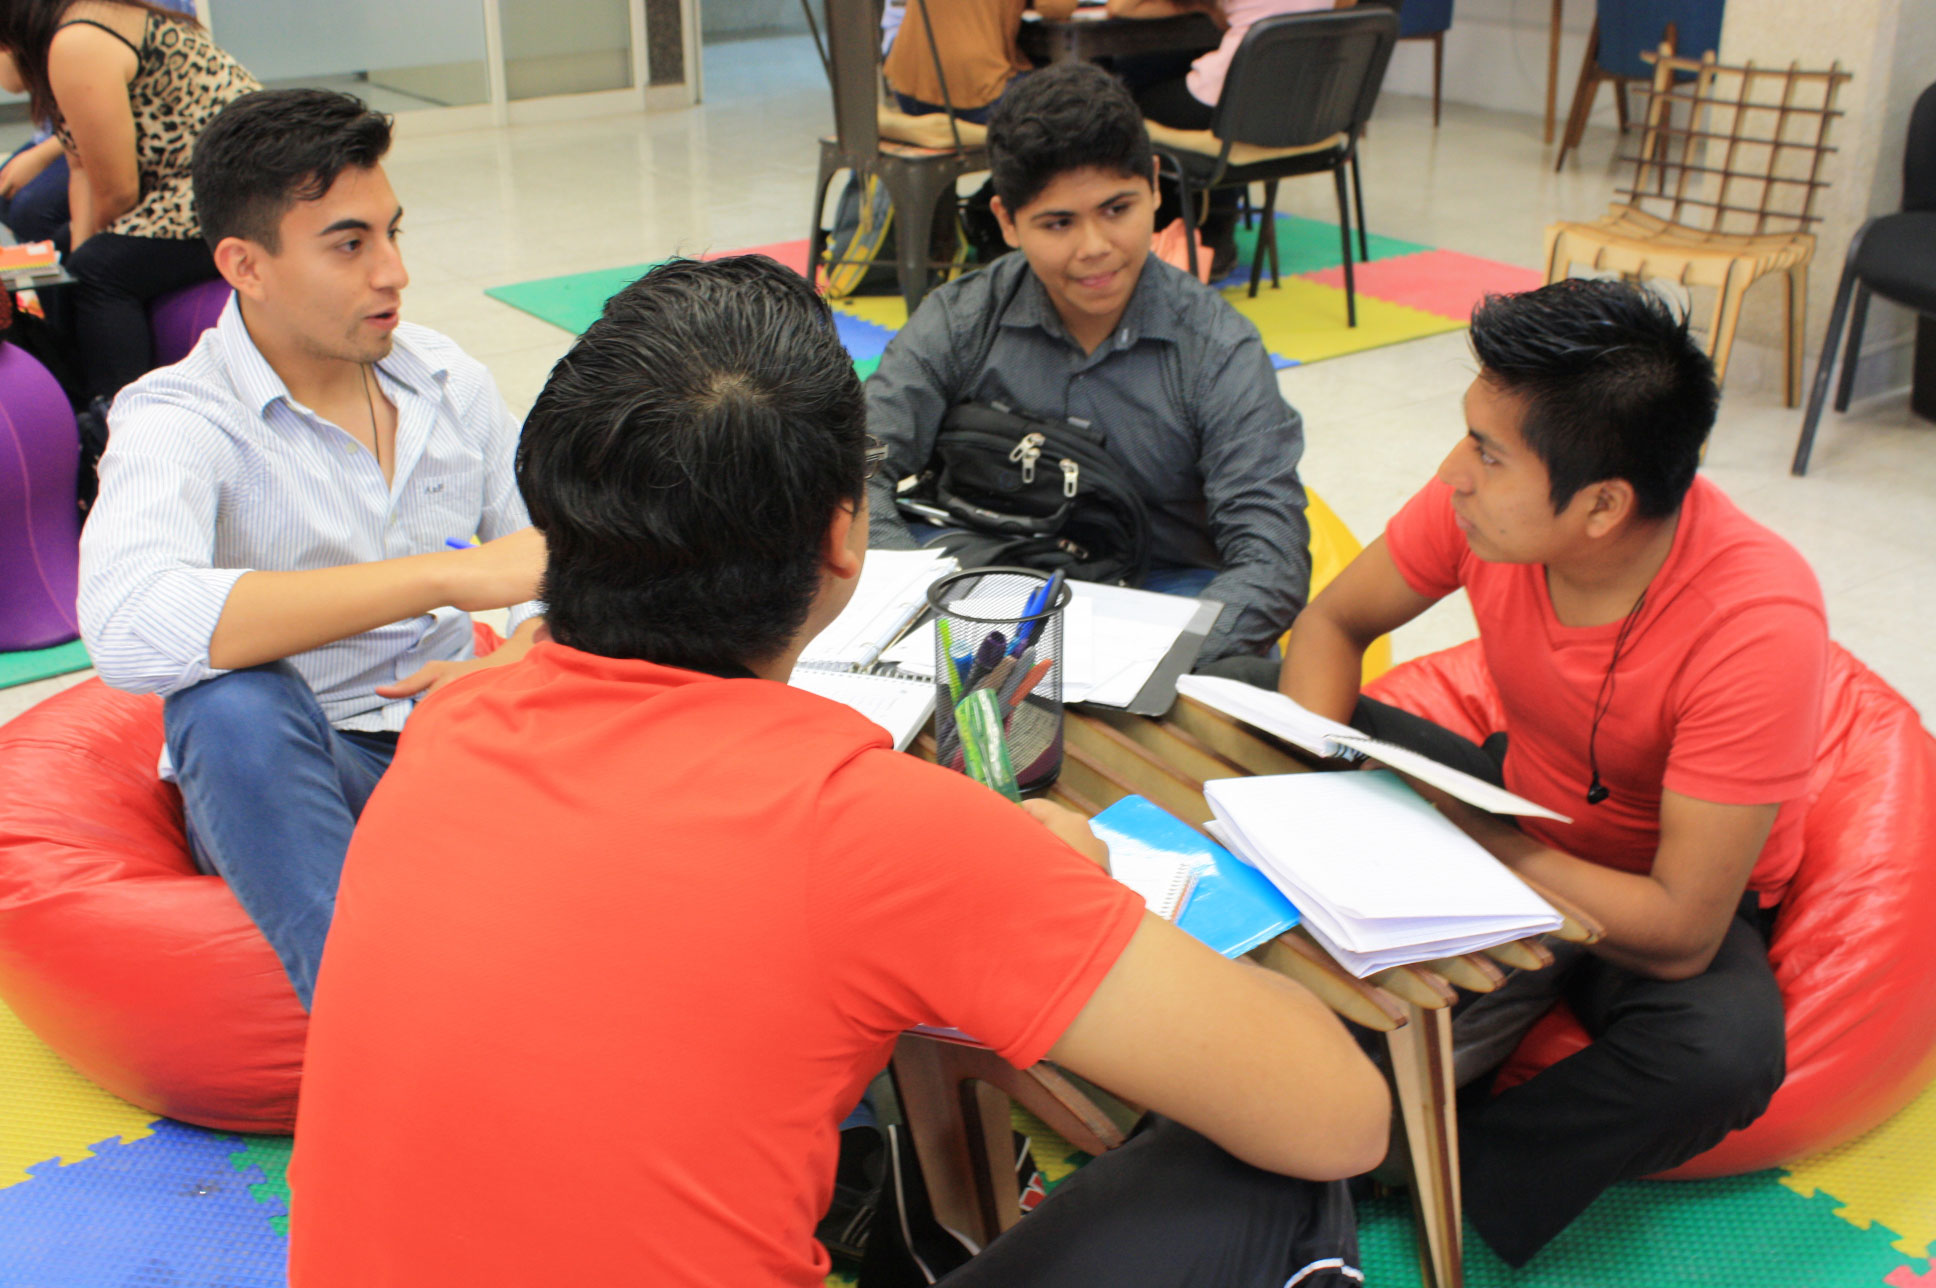 La imagen muestra a varios estudiantes trabajando juntos en el aula POETA.